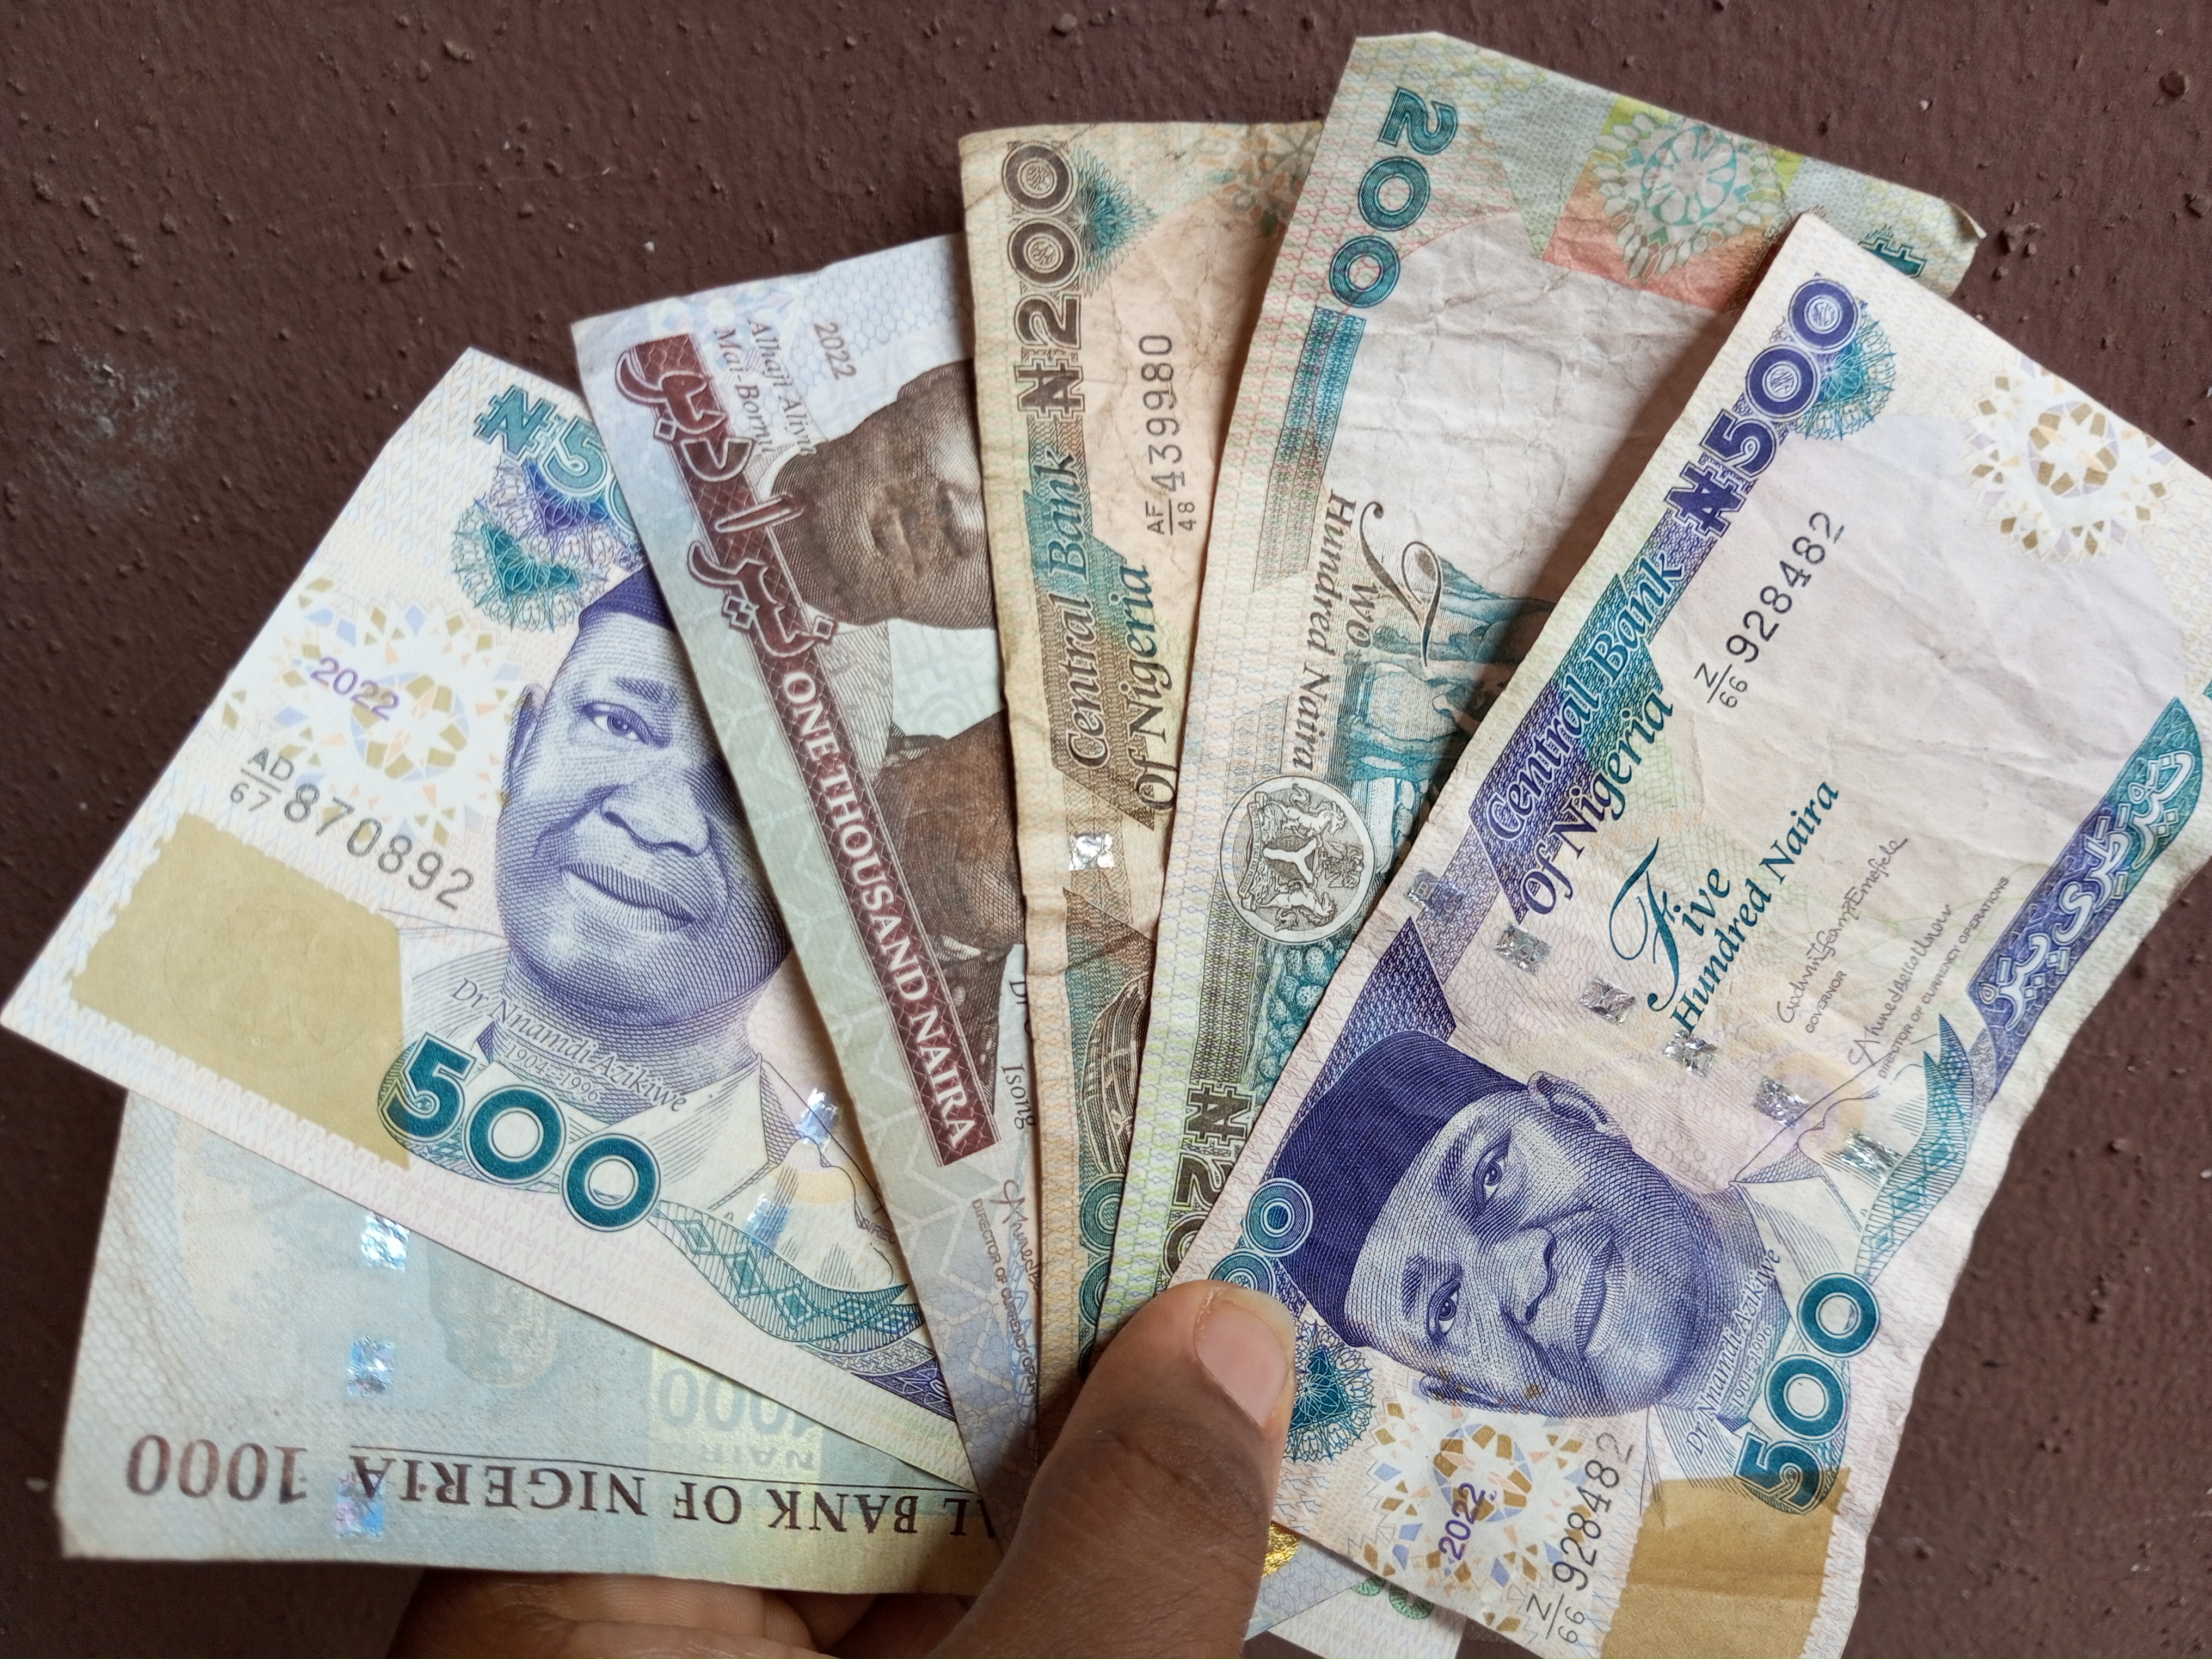 Nigeria’s apex bank, CBN, says old N200, N500, N1,000 naira remain legal tender 